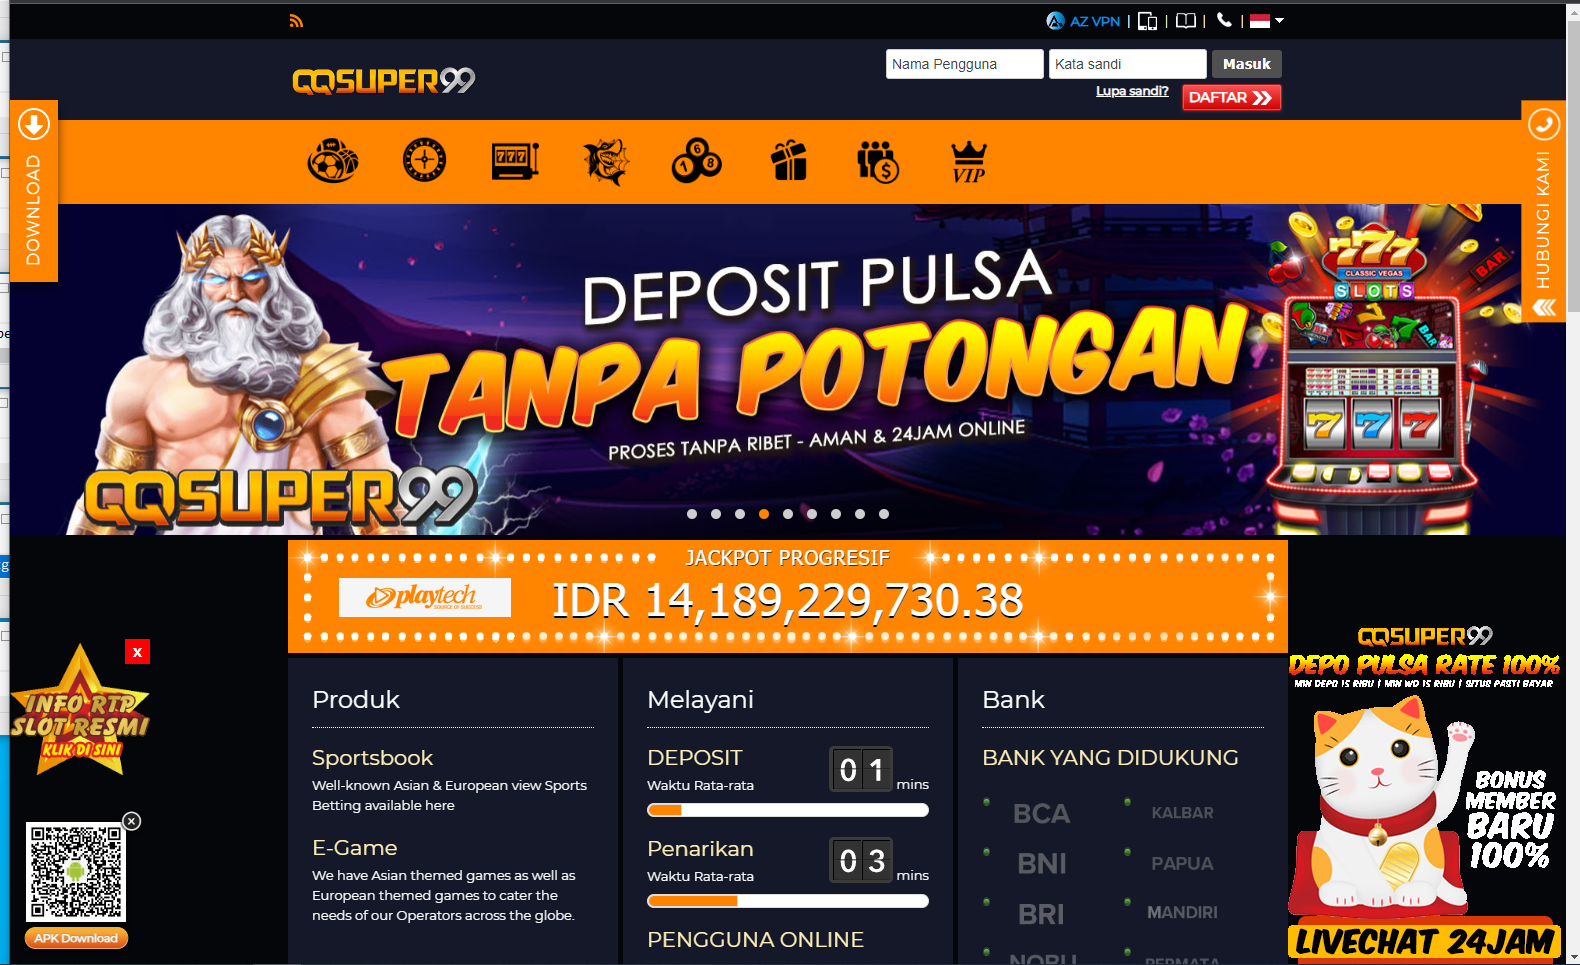 QQSUPER99 Slot Judi Online Deposit Pulsa Tanpa Potongan Terpercaya